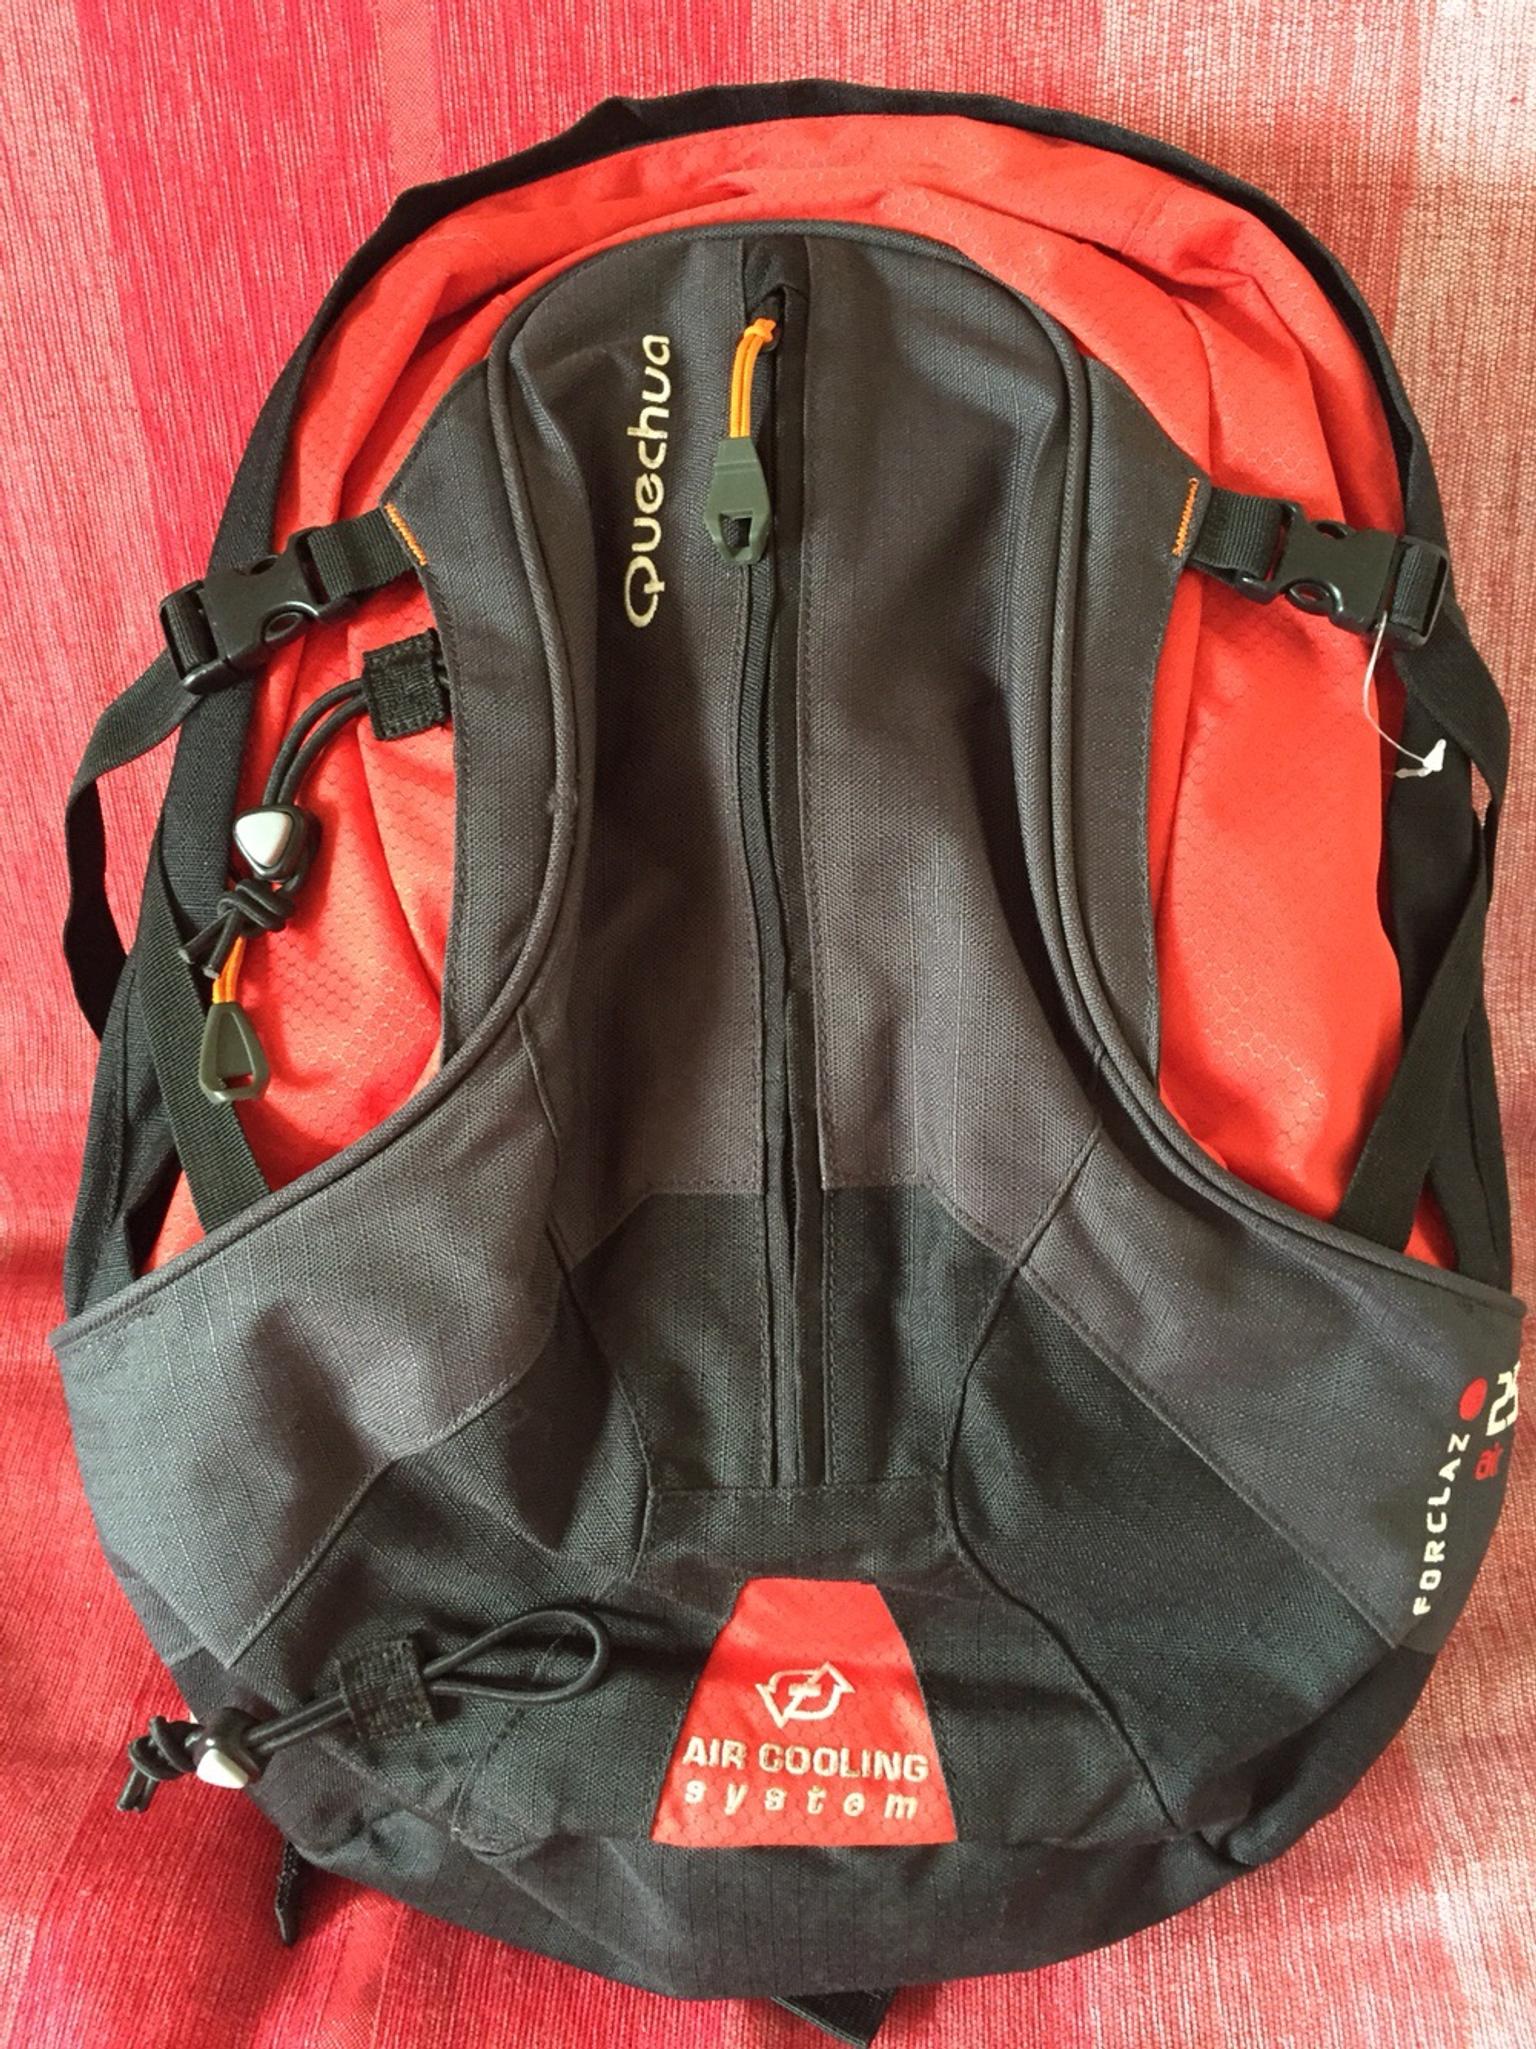 quechua 25l backpack